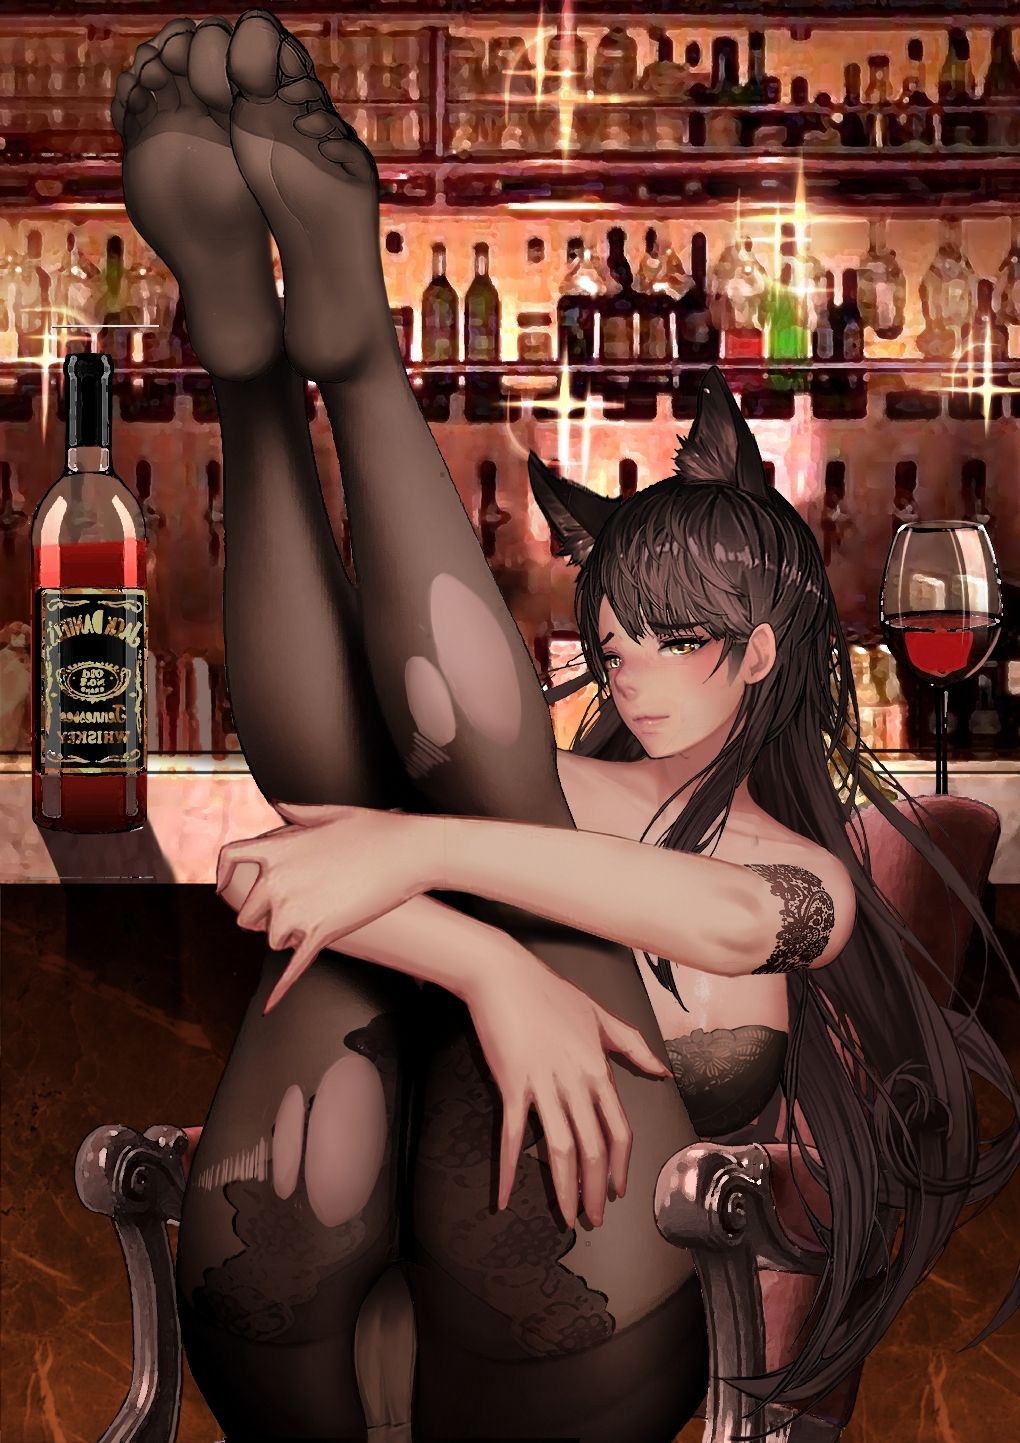 [-kudagu-] atago in the bar (Azur Lane) 1